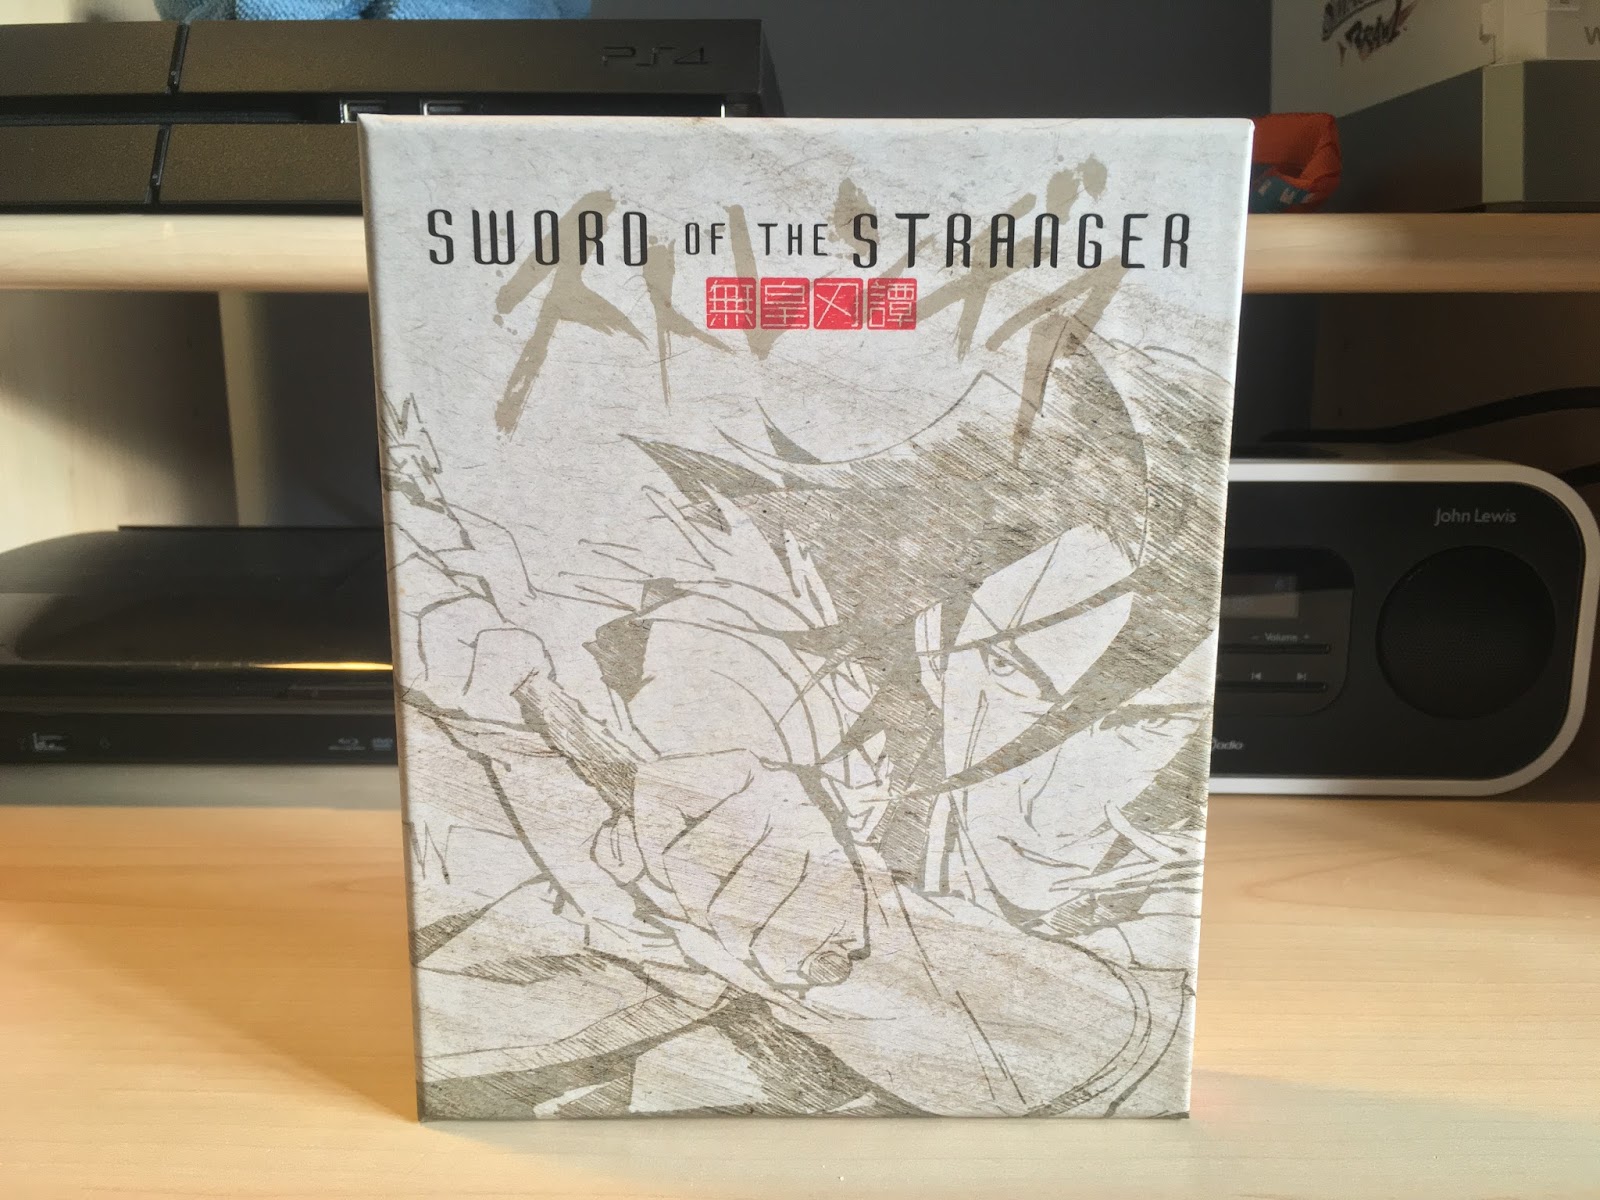 SWORD OF THE STRANGER - 2007 - Filme em Português